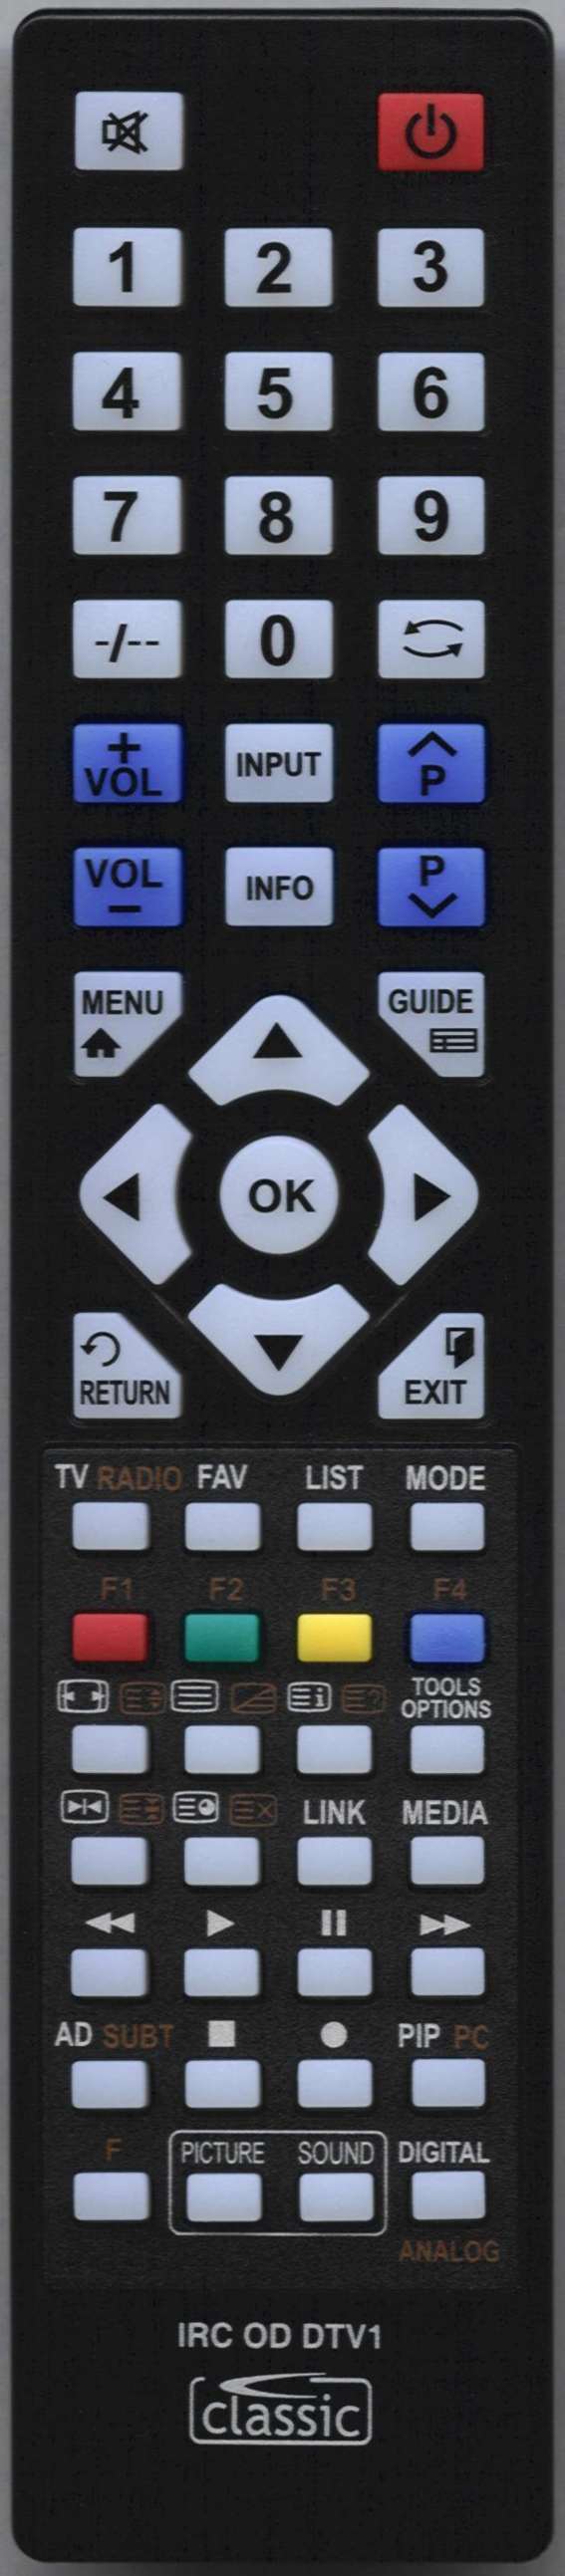 LUXOR 10140043 Remote Control Alternative